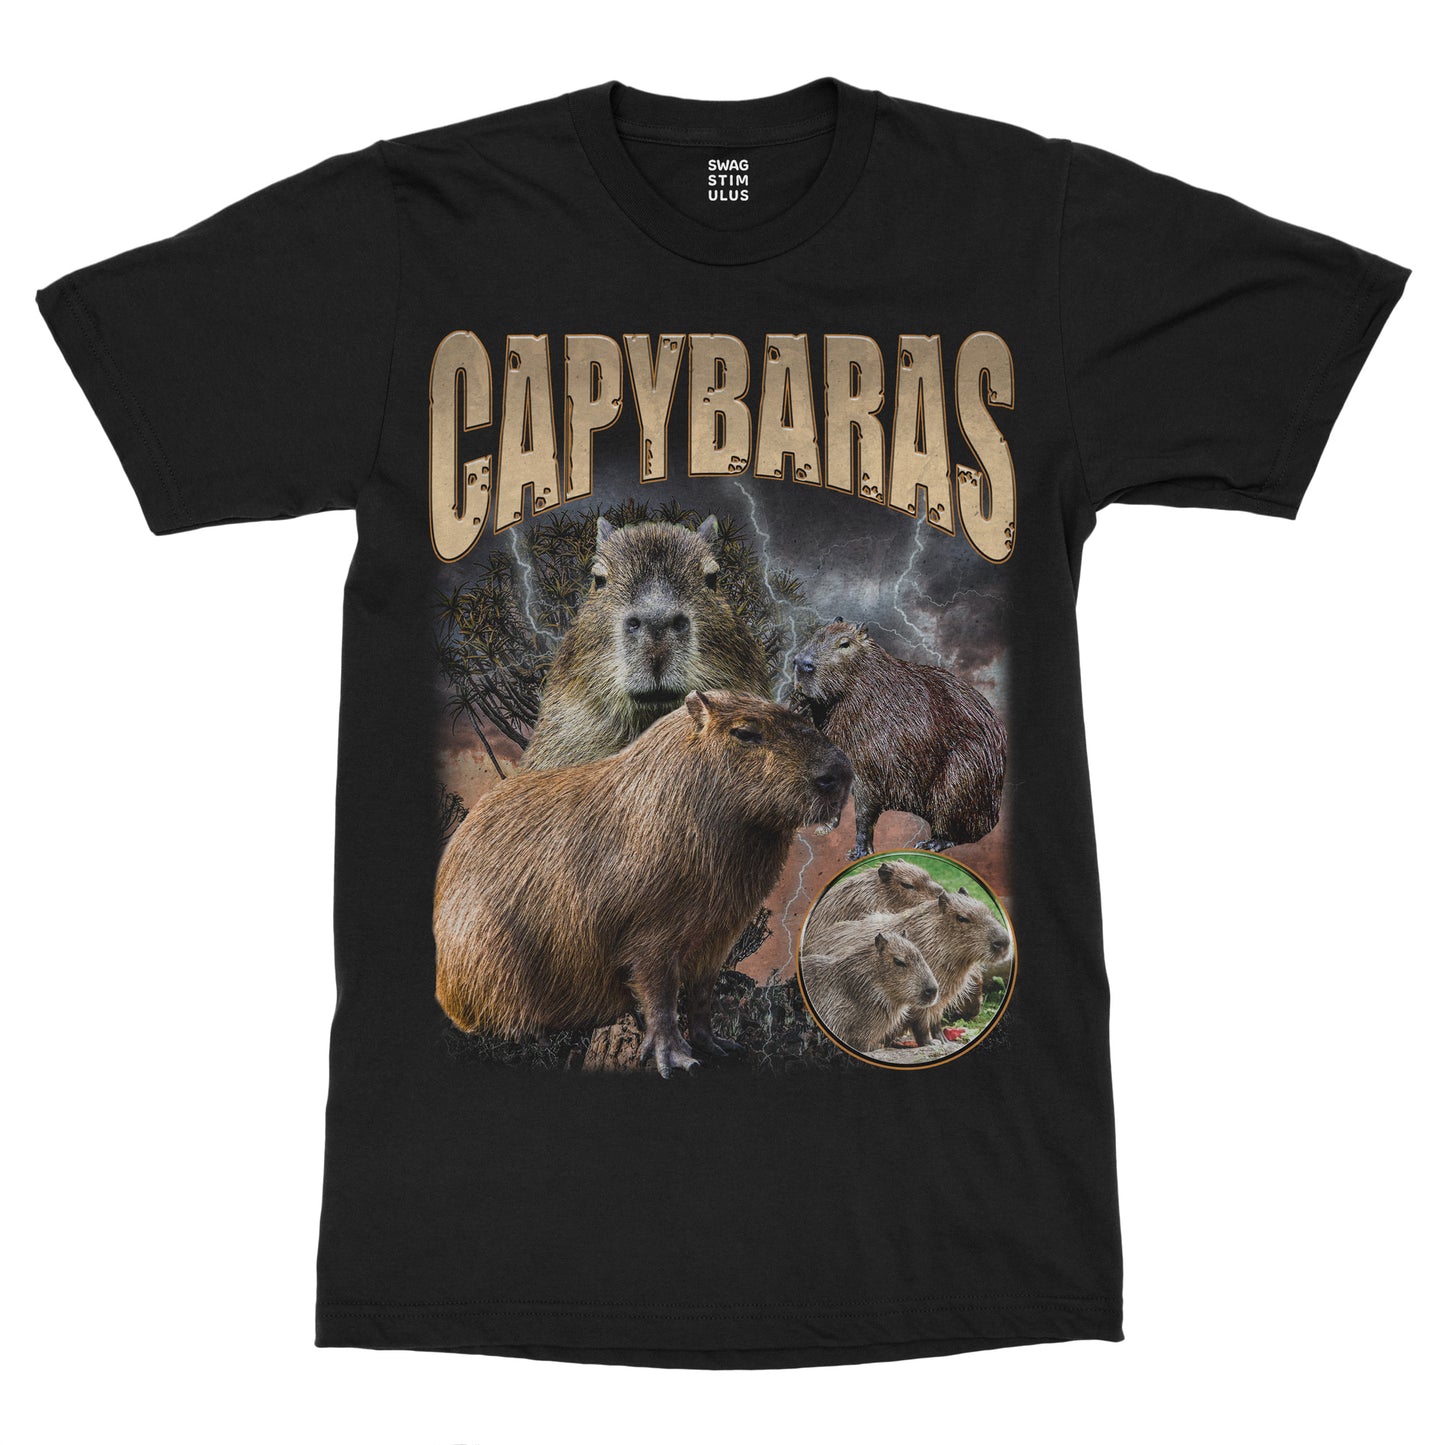 Capybara Band T-Shirt